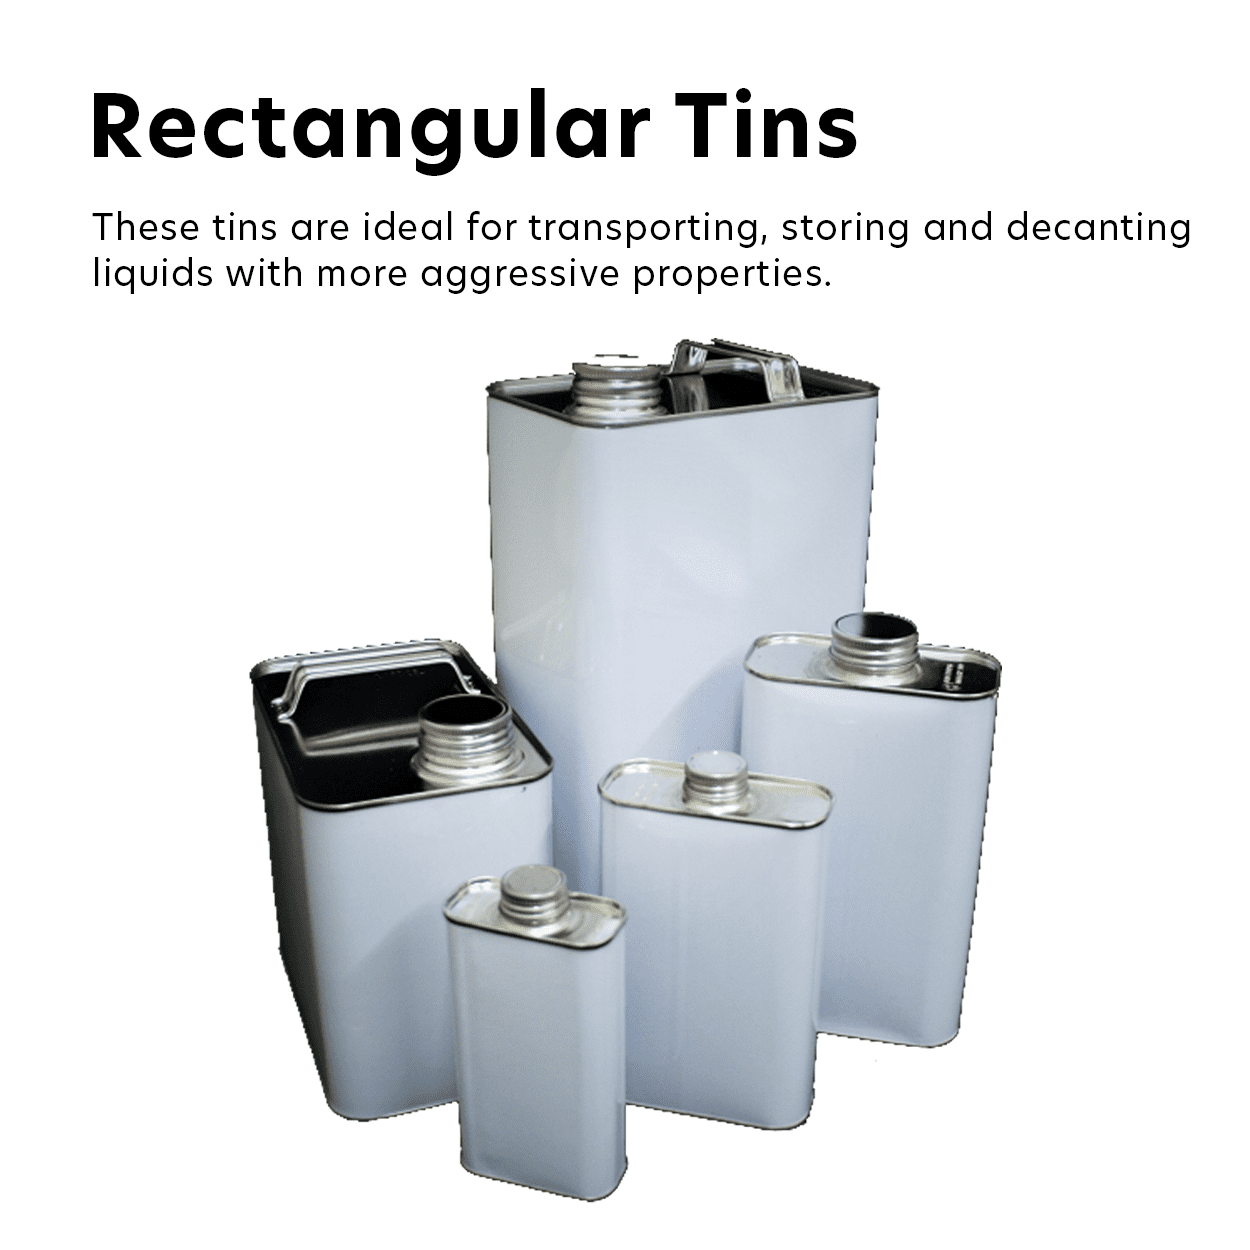 Rectangular Tins